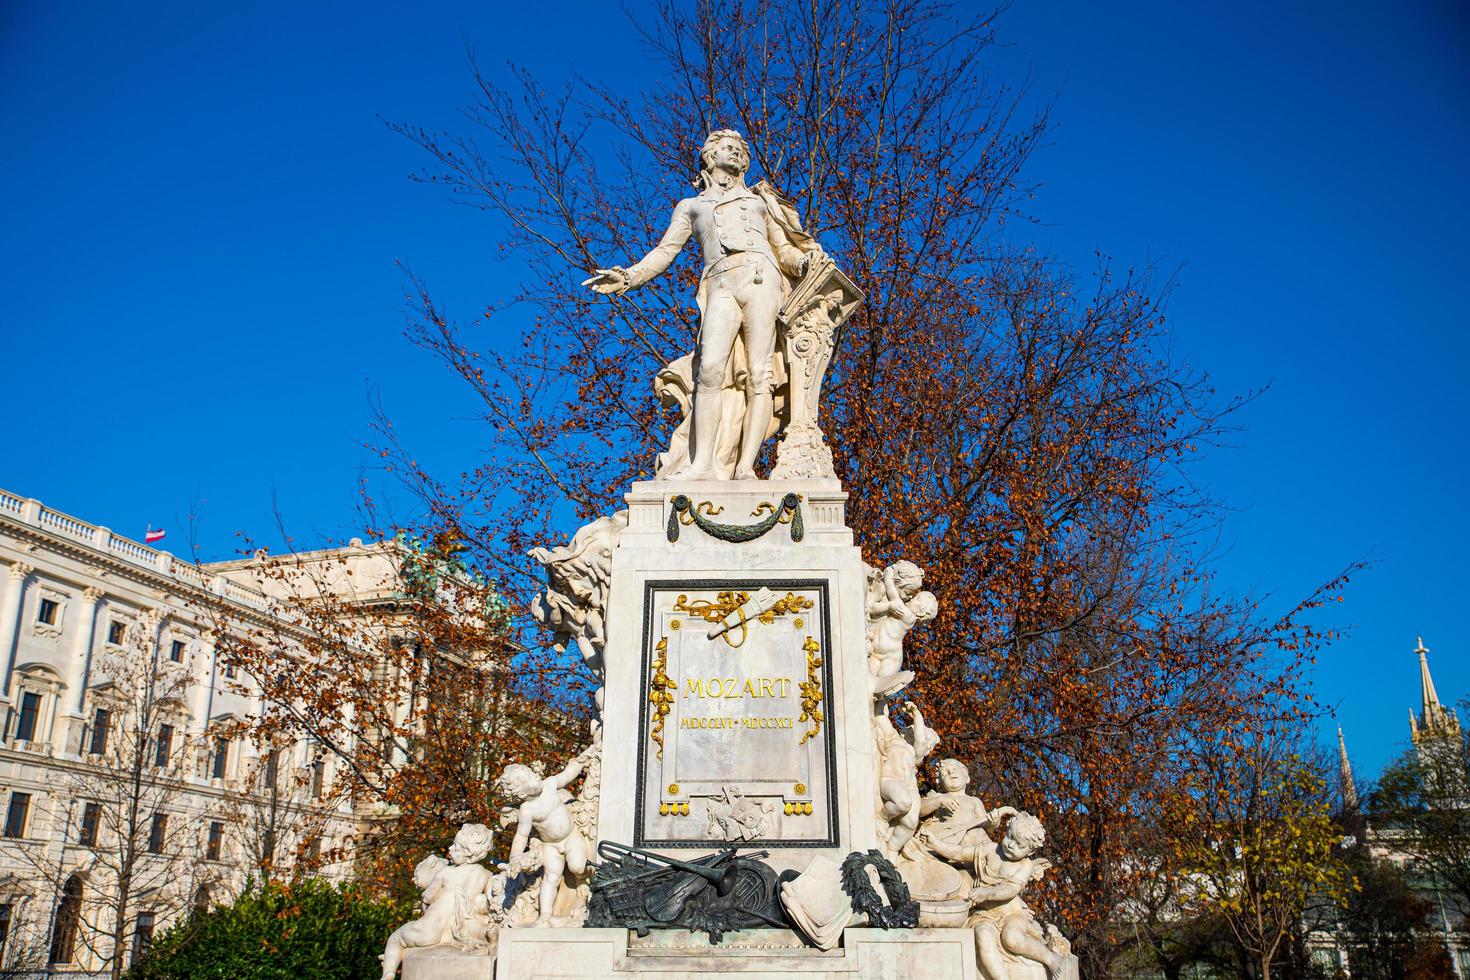 vienne, autriche 2021 - statue en marbre dédiée au célèbre compositeur et musicien wolfgang amadeus mozart par une journée ensoleillée dans le jardin de burggarten à vienne, autriche photo